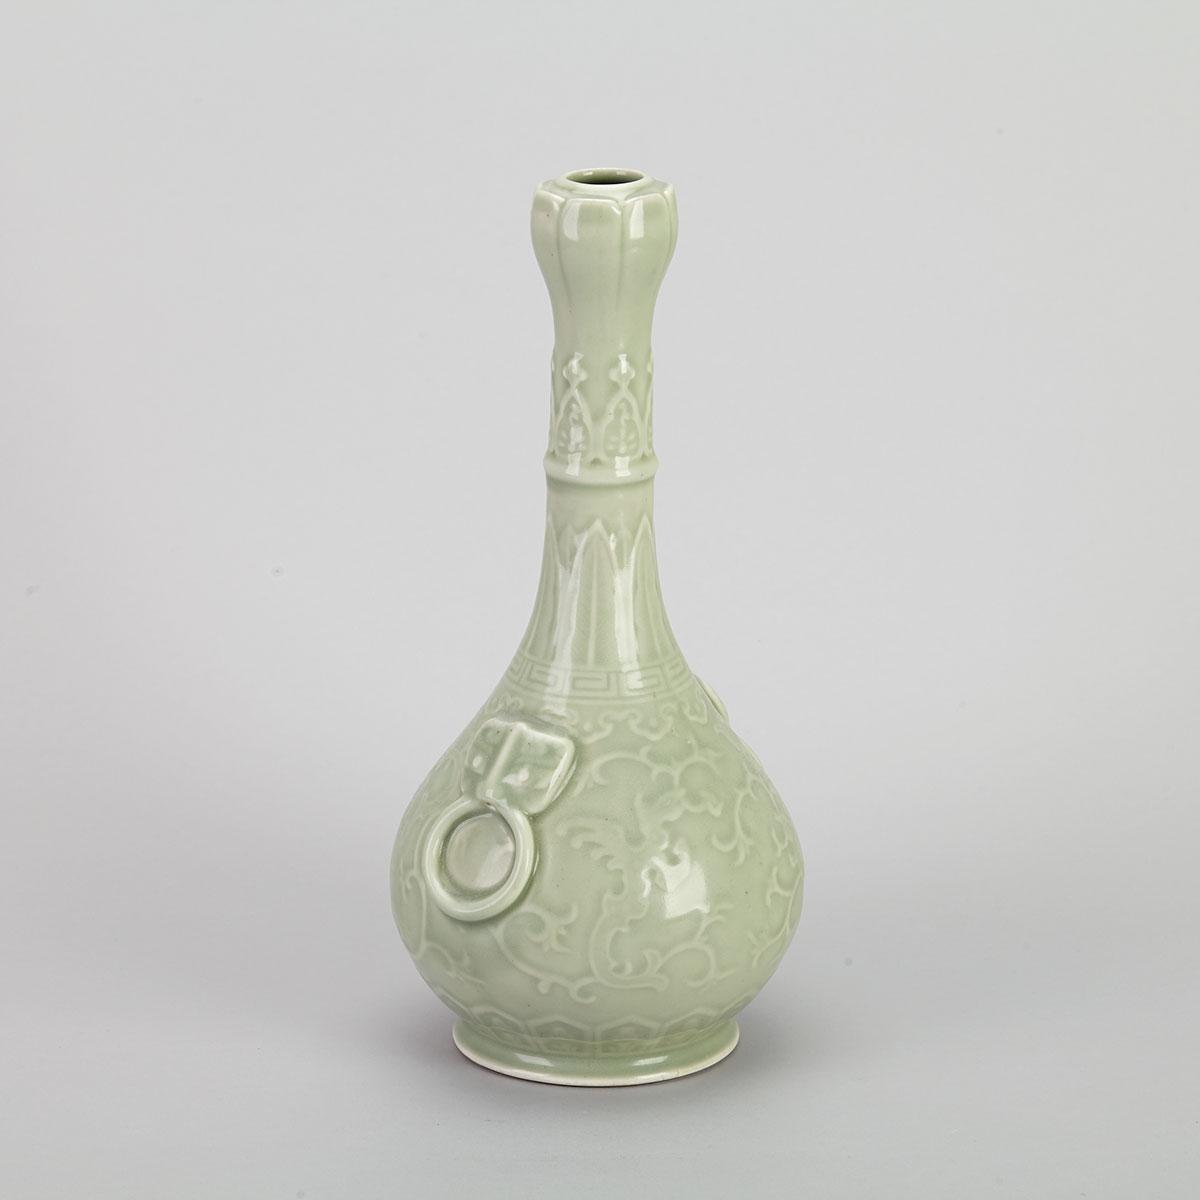 Celadon Carved Garlic Head Vase, Republican Period